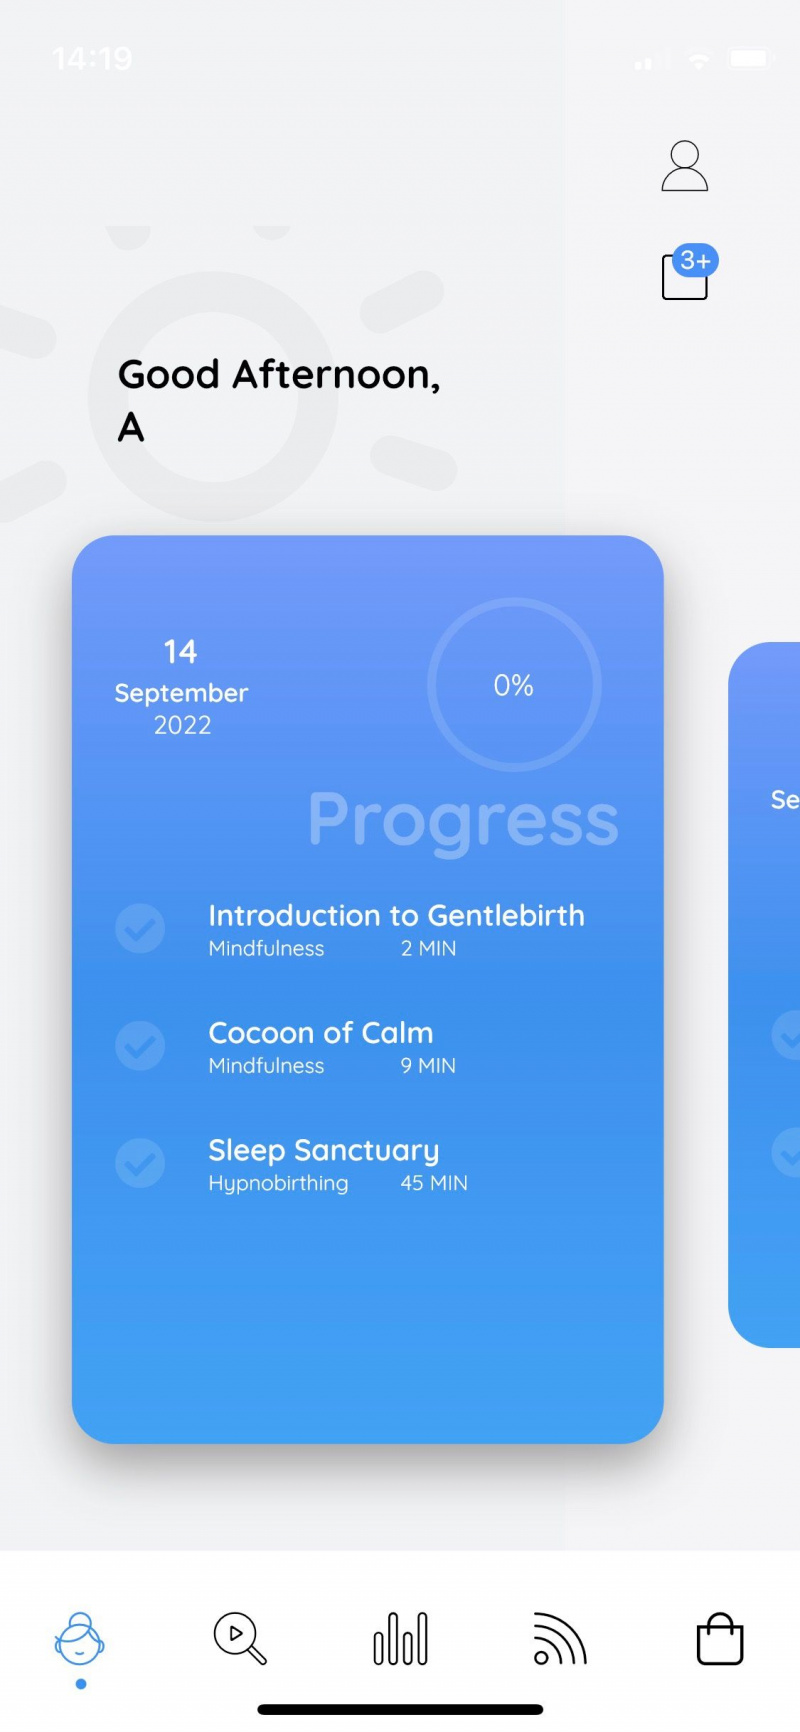   Captura de tela do aplicativo Gentlebirth mostrando a tela de progresso